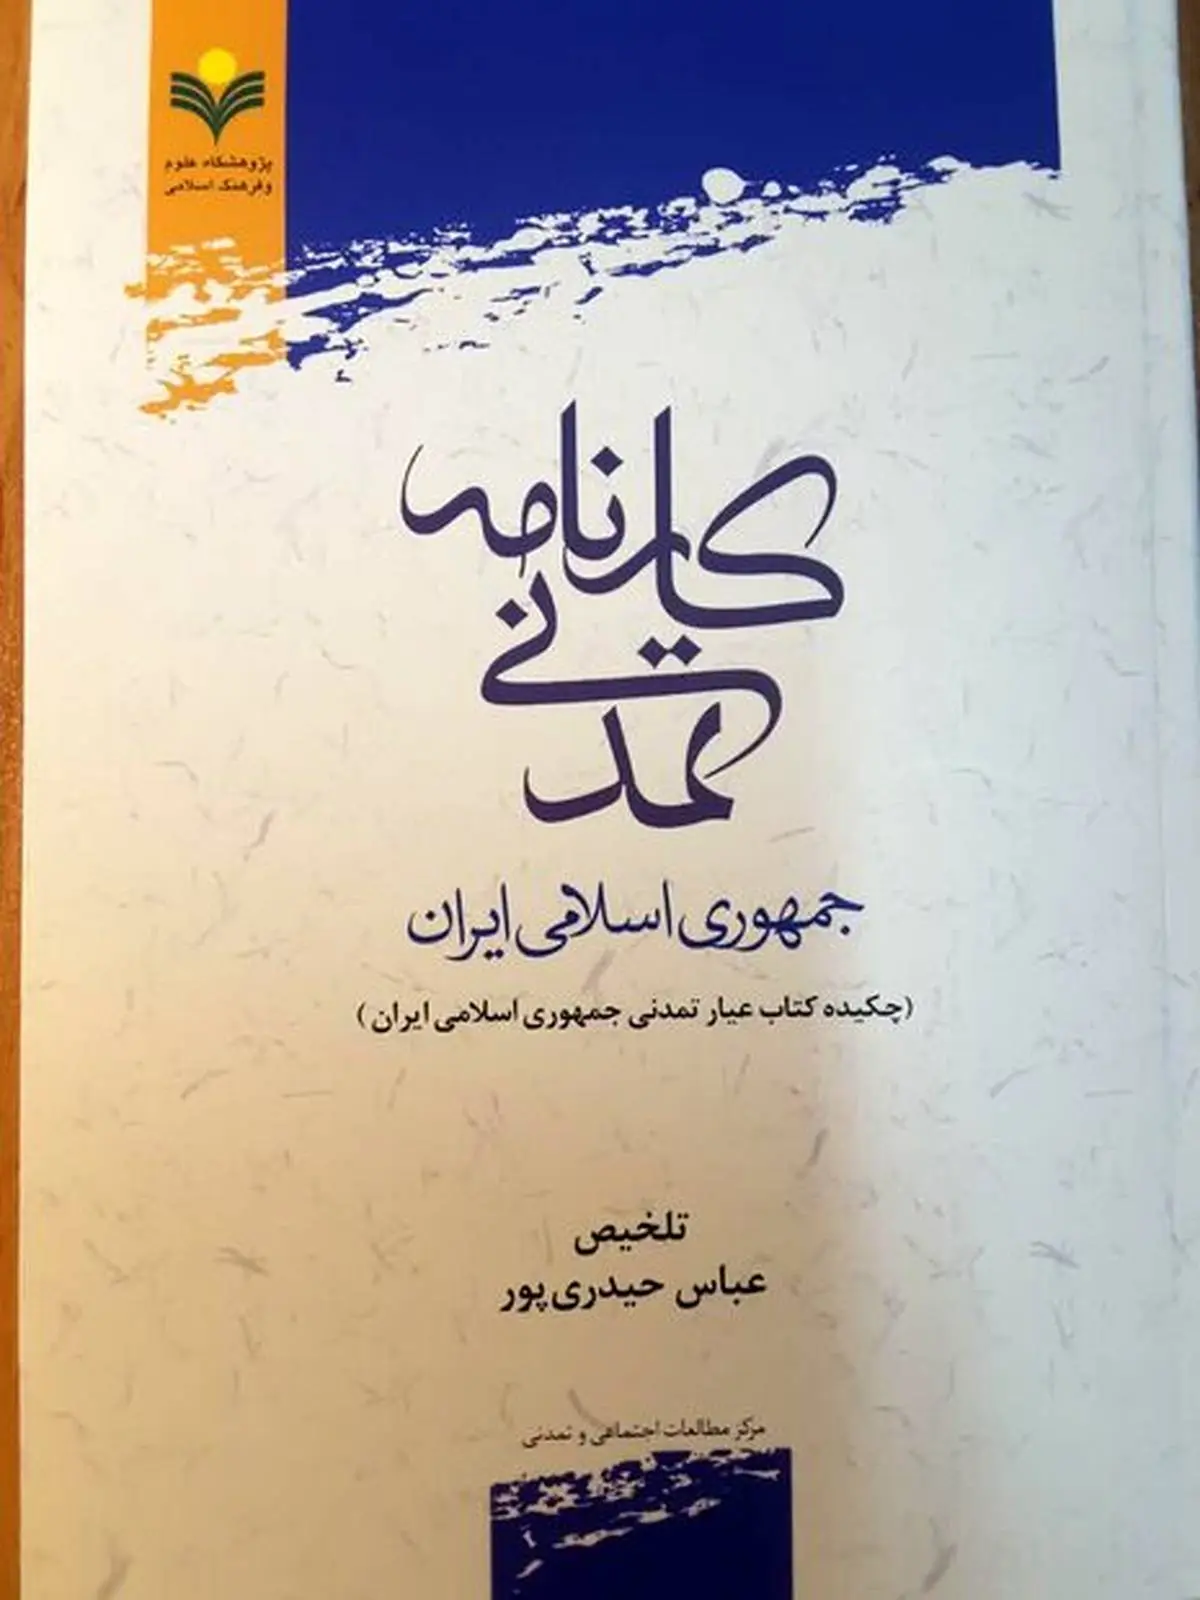 کارنامه تمدنی جمهوری اسلامی ایران منتشر شد

